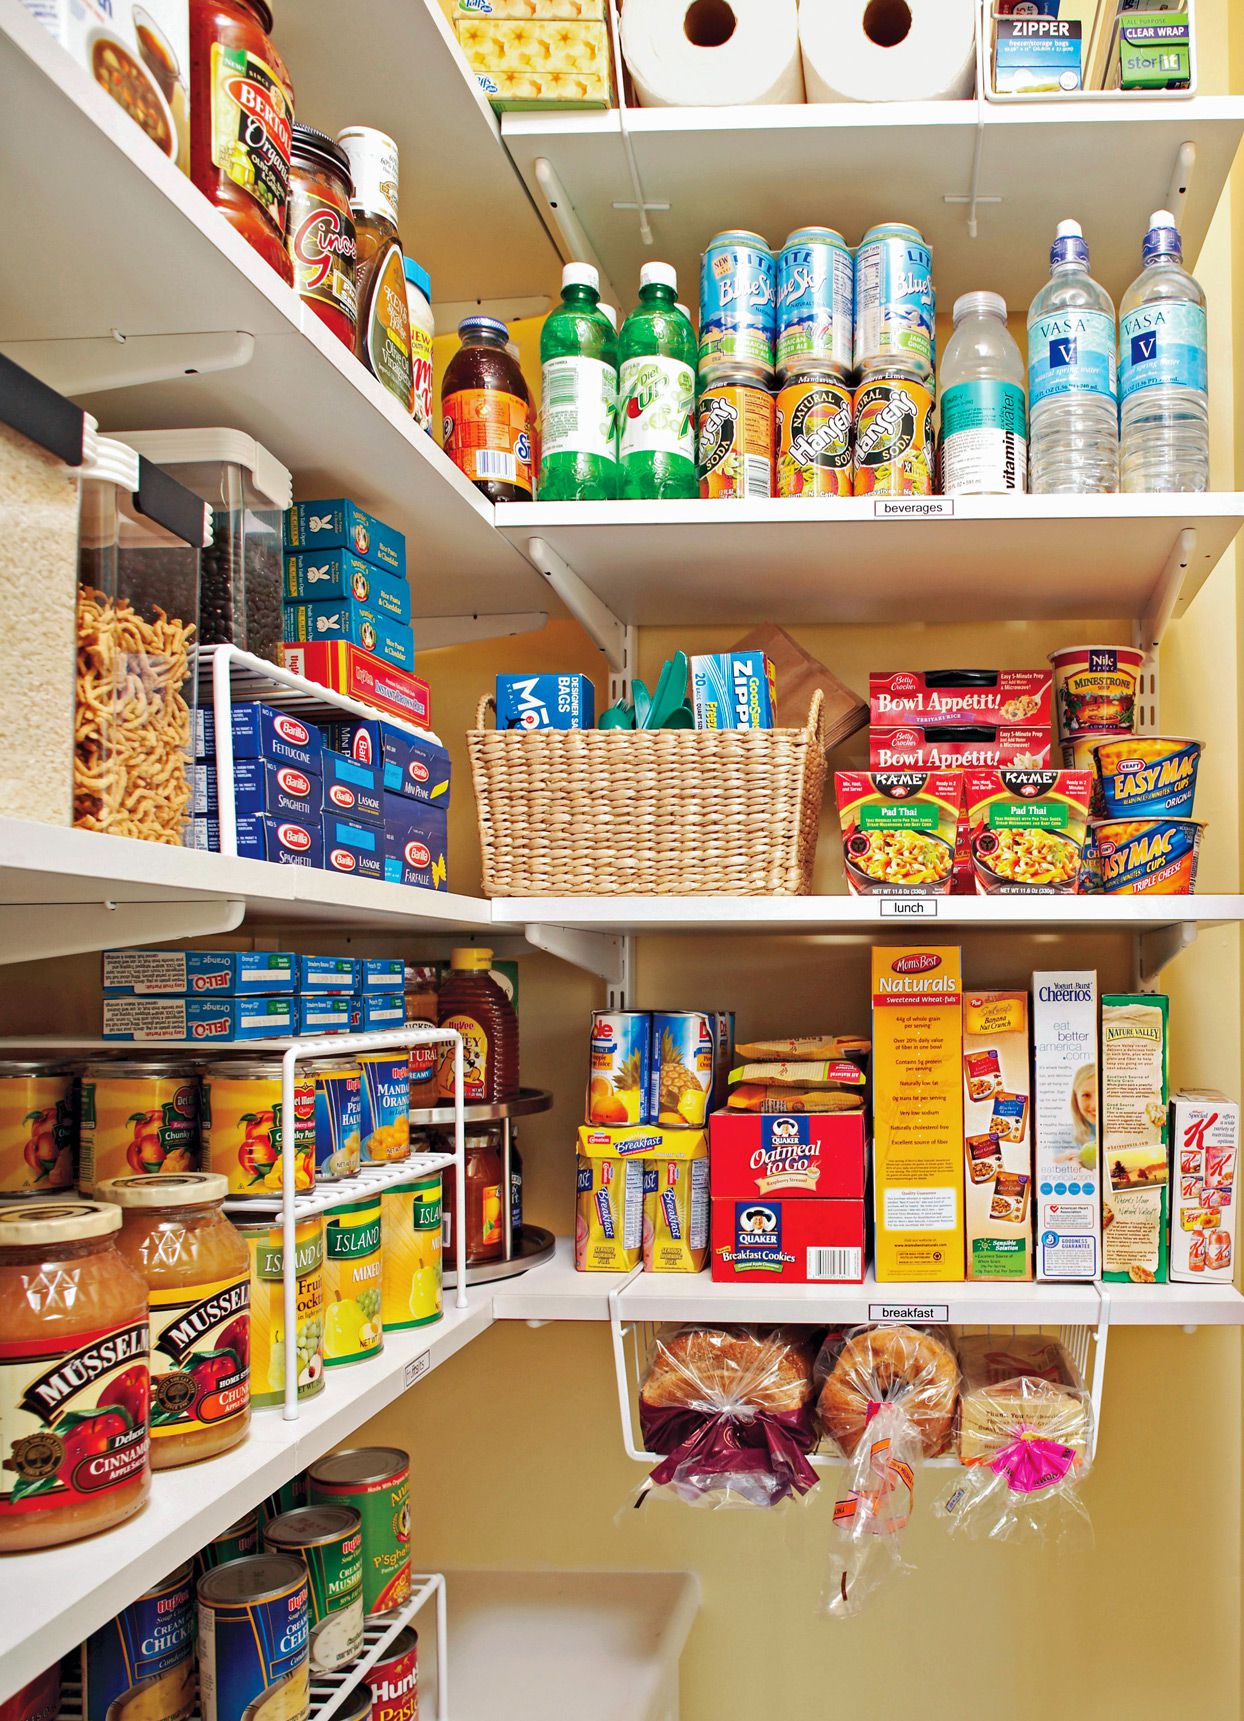 Cách sắp xếp đồ hộp trong tủ đựng thức ăn rất gọn gàng và khoa học - Ảnh 4.